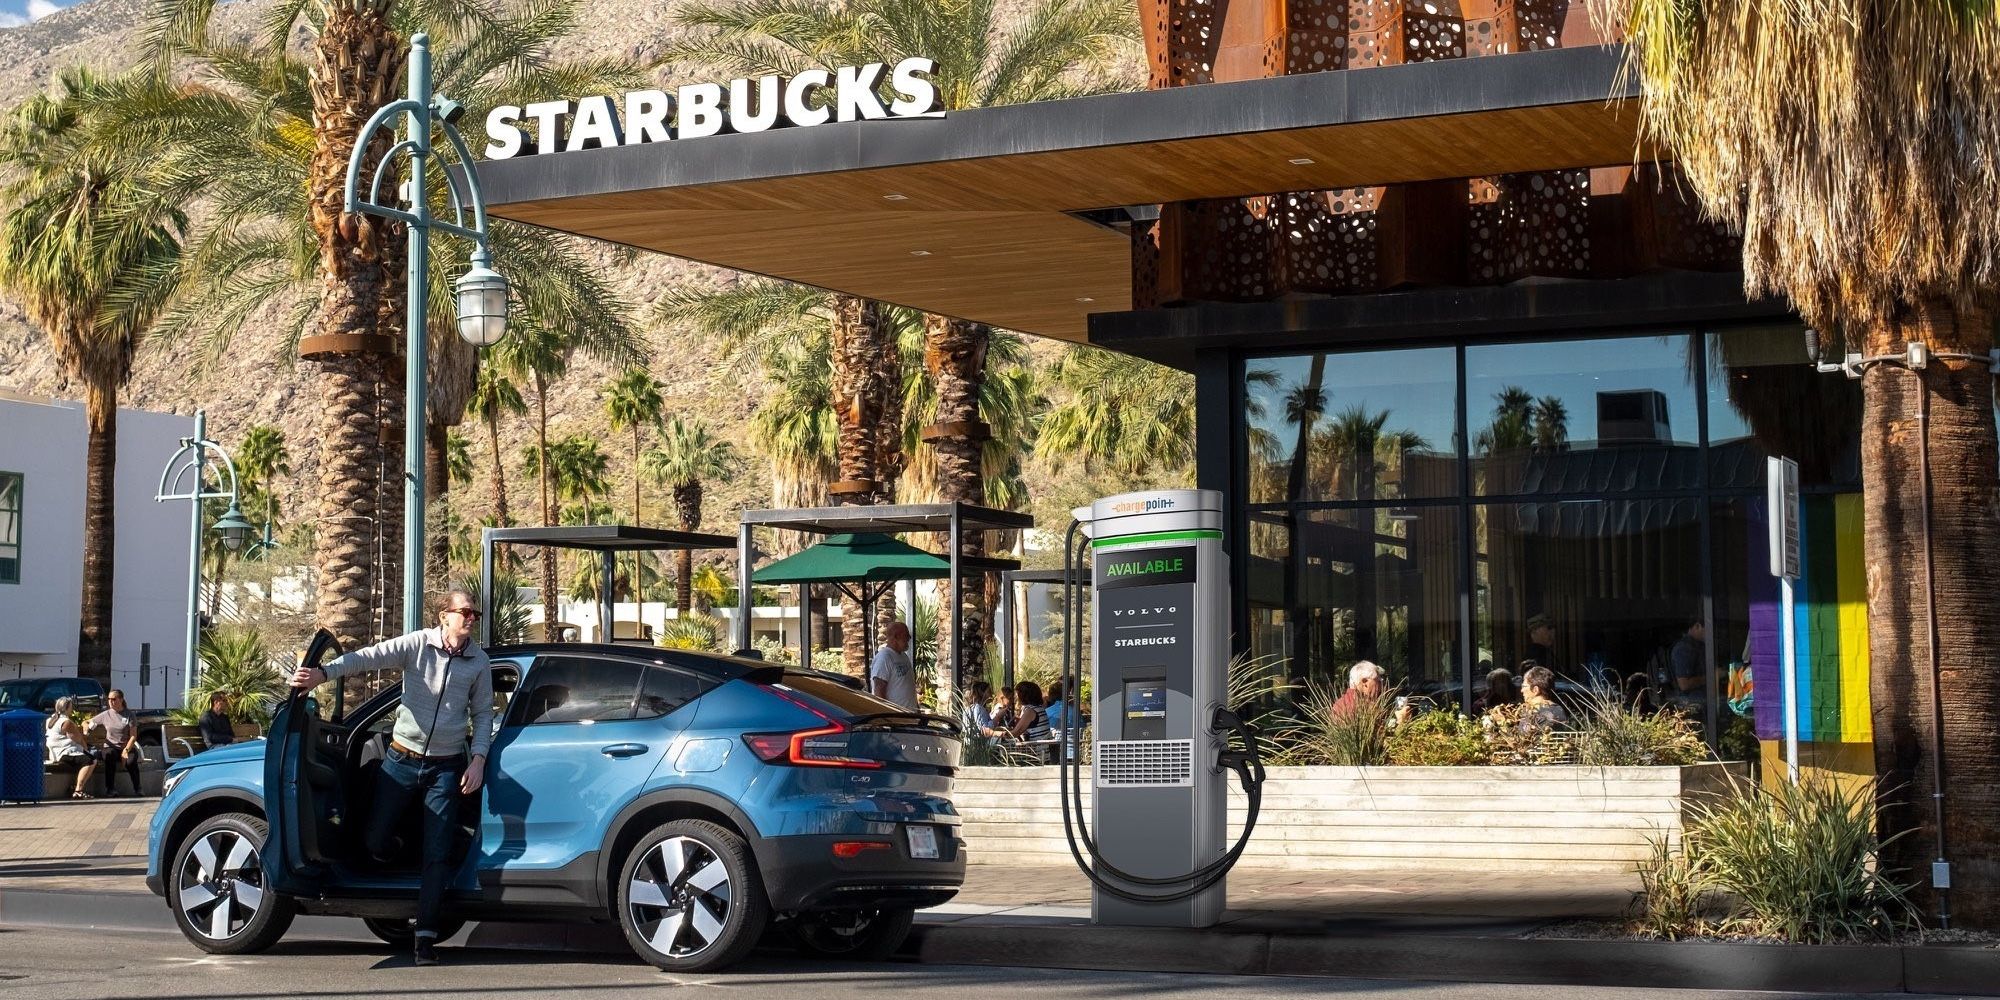 Cargar un vehículo eléctrico mientras tomas Starbucks ahora es una realidad